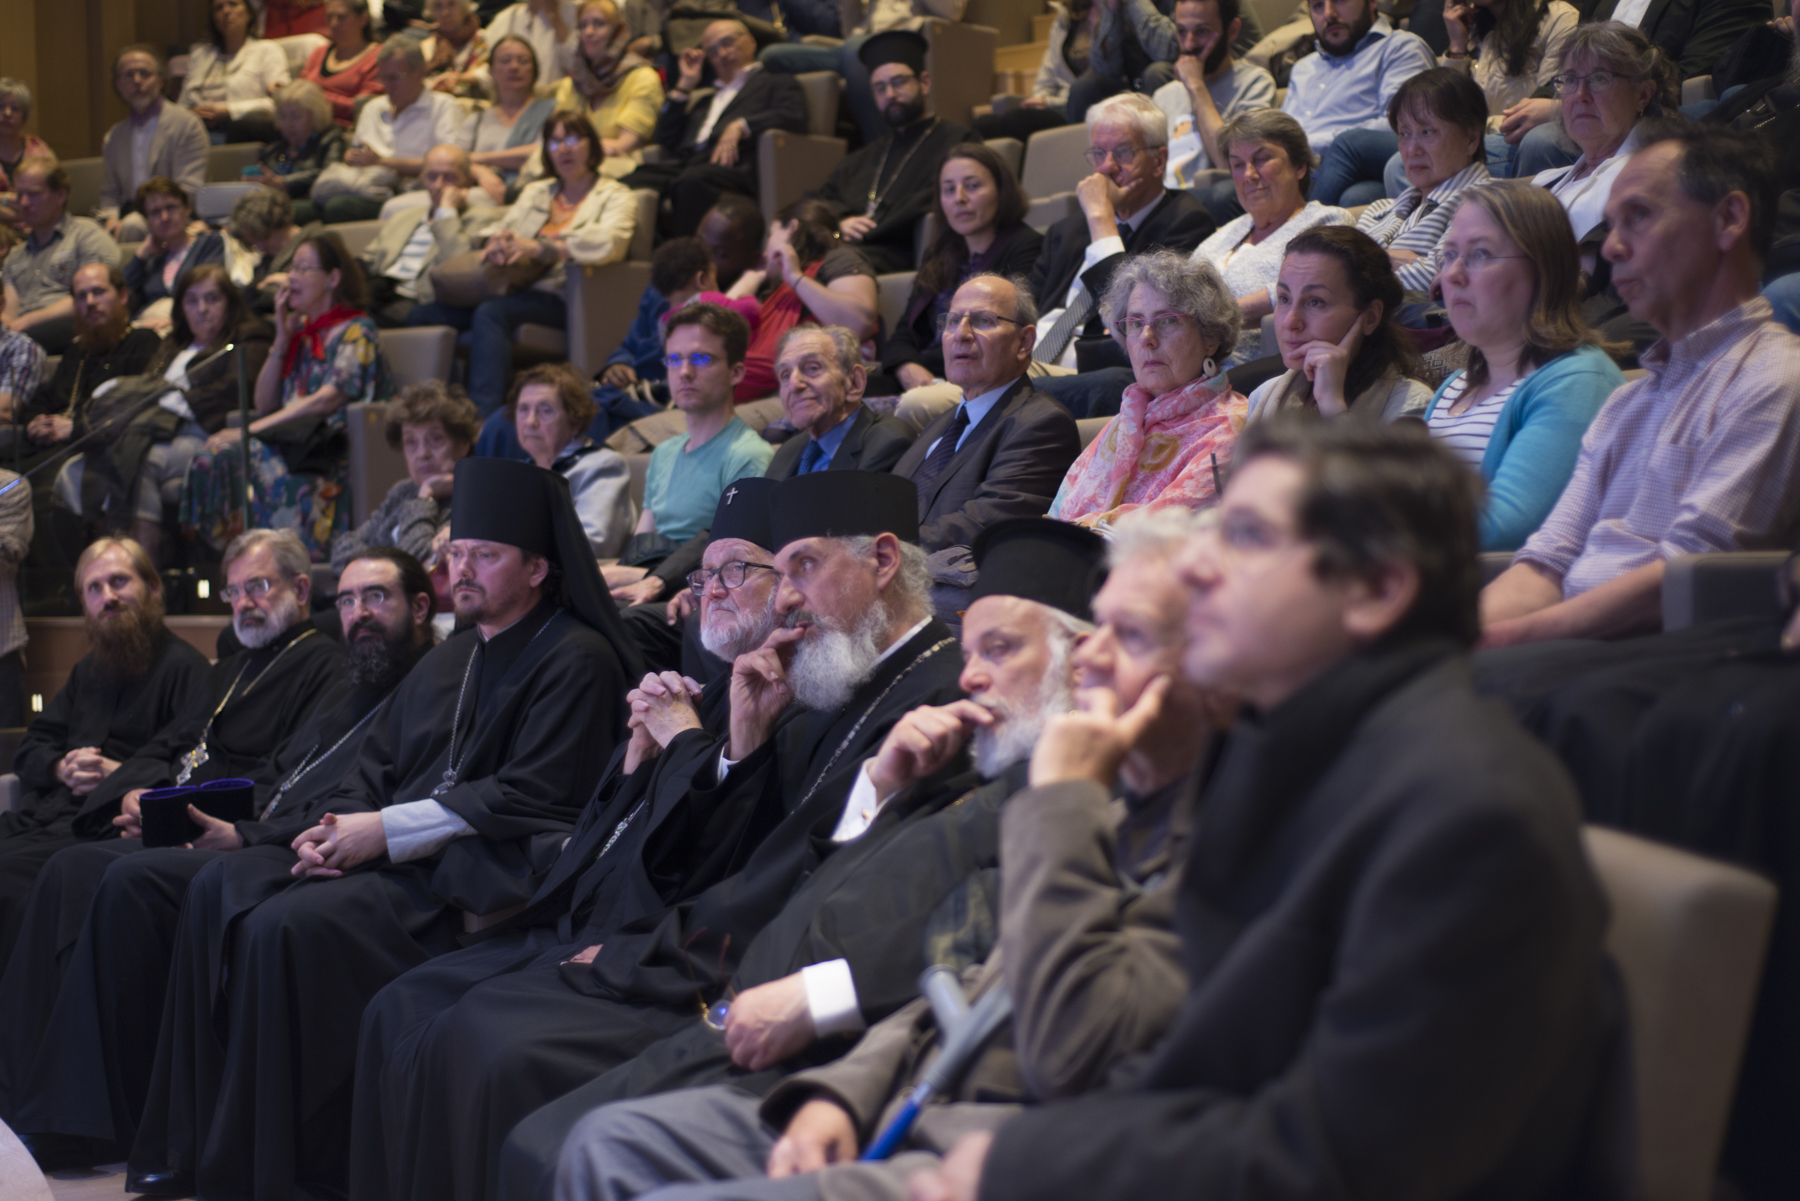 La «Journée de l’Orthodoxie» a eu lieu dans le Centre spirituel et culturel